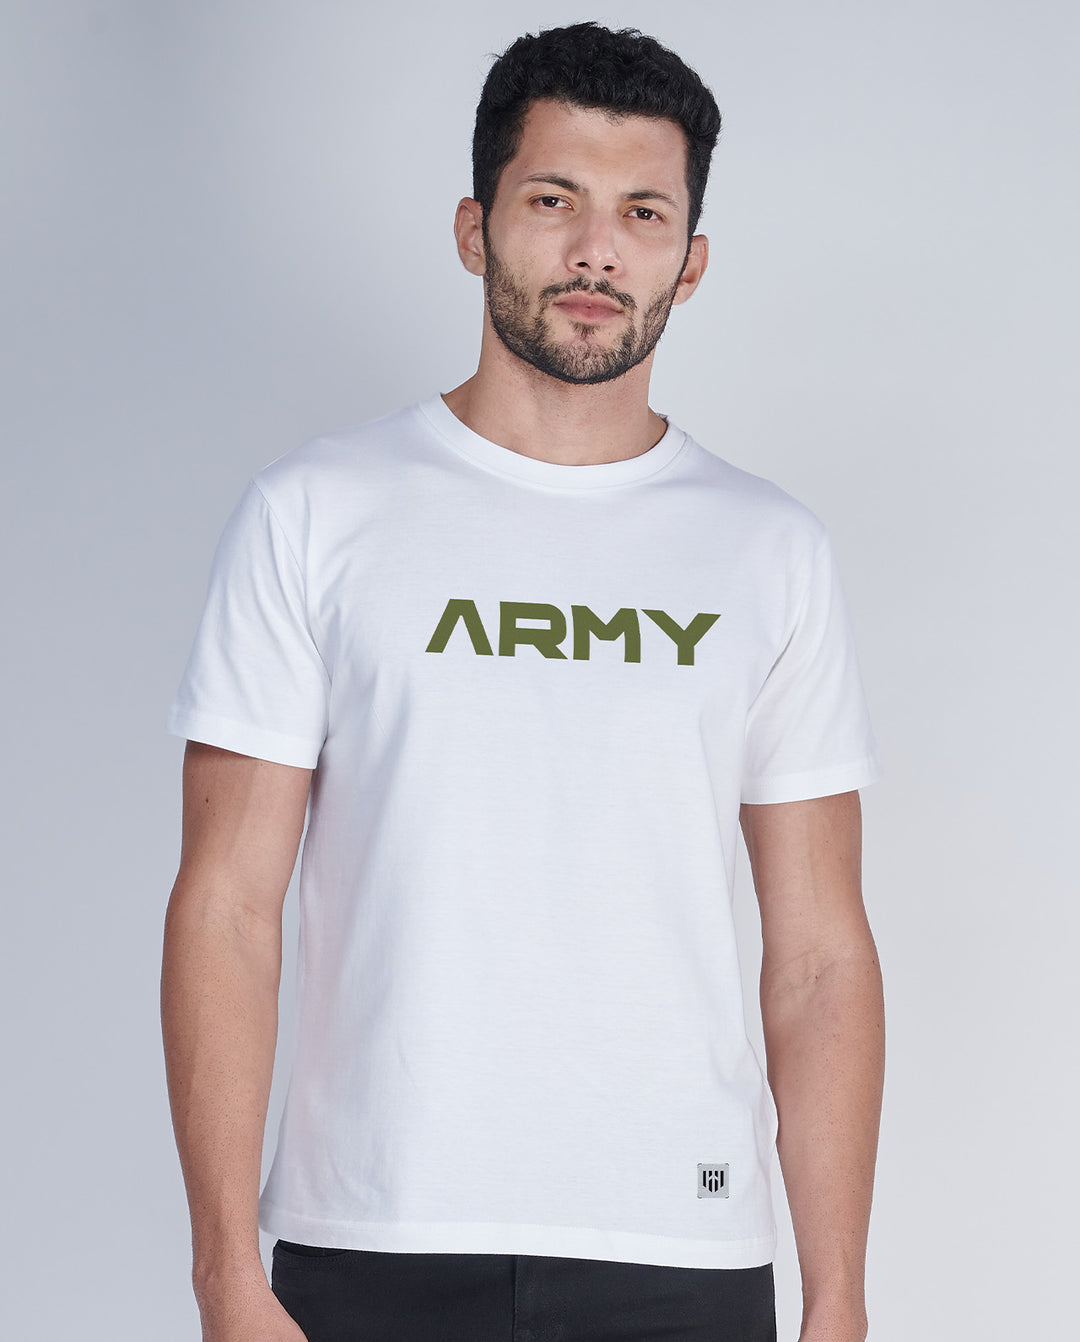 Army Pride T-Shirt - Aero Armour